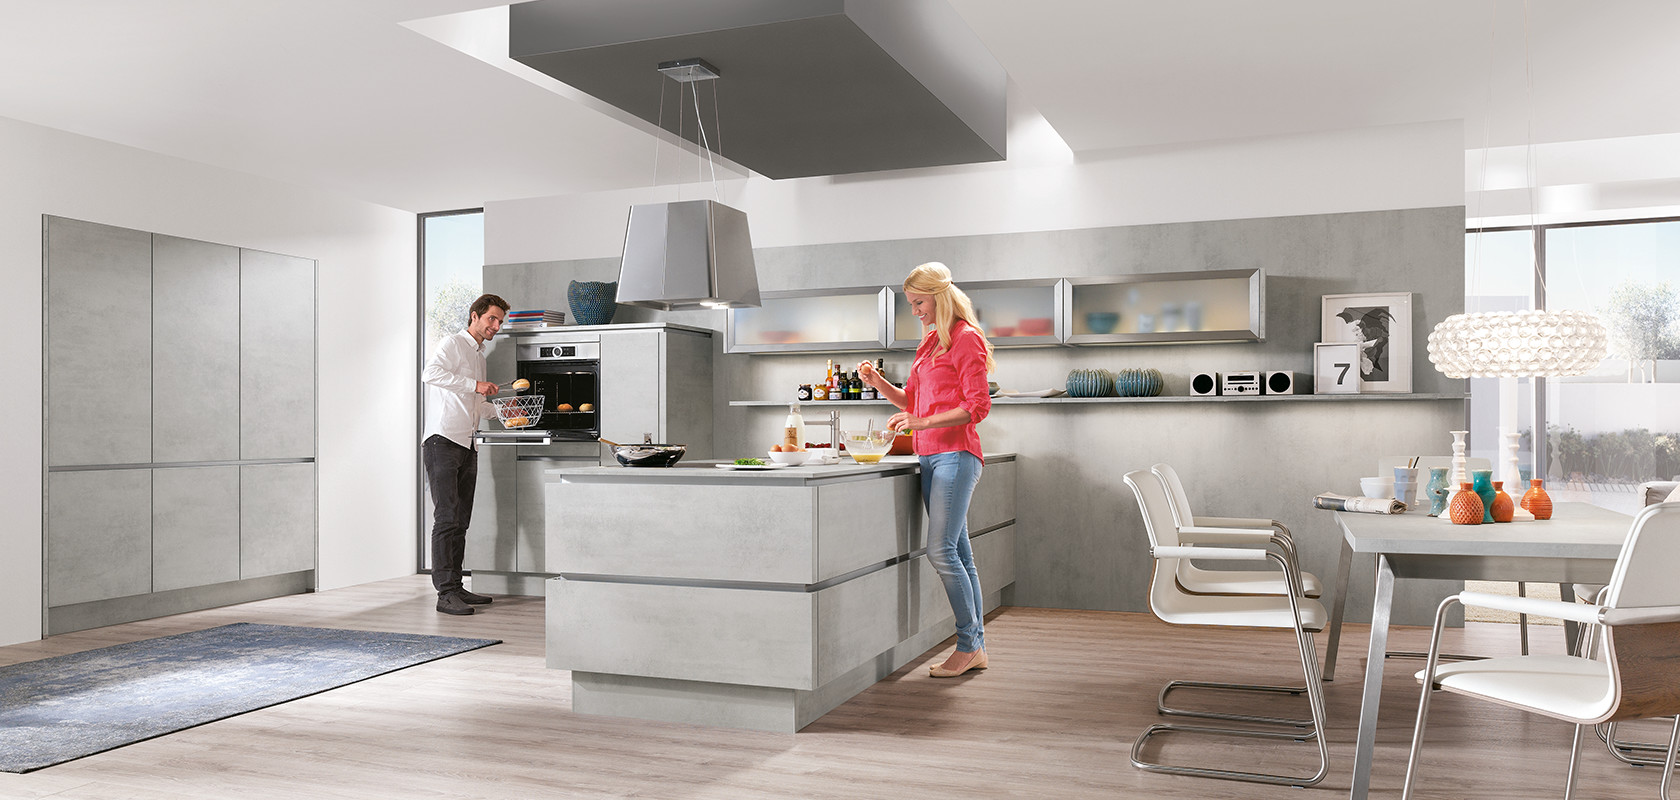 Ein modernes Küchendesign mit zwei Personen beim Kochen, mit eleganten Schränken, Edelstahlgeräten und einem hellen, geräumigen Layout.